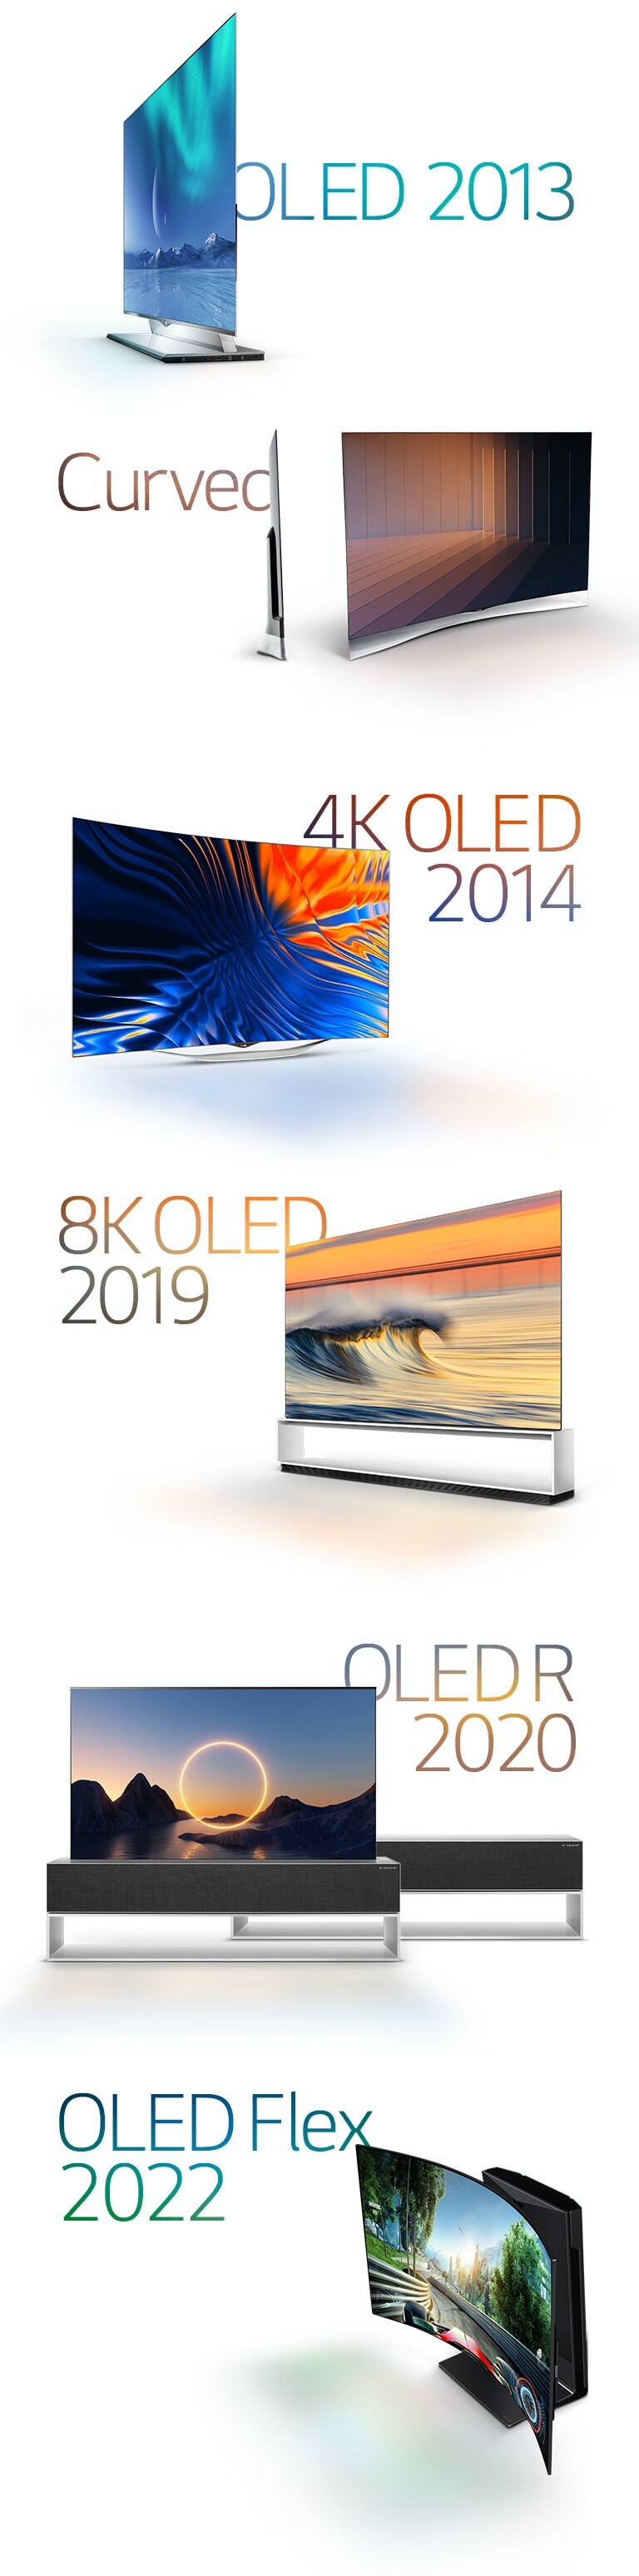 Imágenes de los LG OLED notables: OLED curvo de 2013, OLED 4K de 2014, OLED 8K de 2019, OLED enrollable de 2020 y LG OLED Flex de 2022